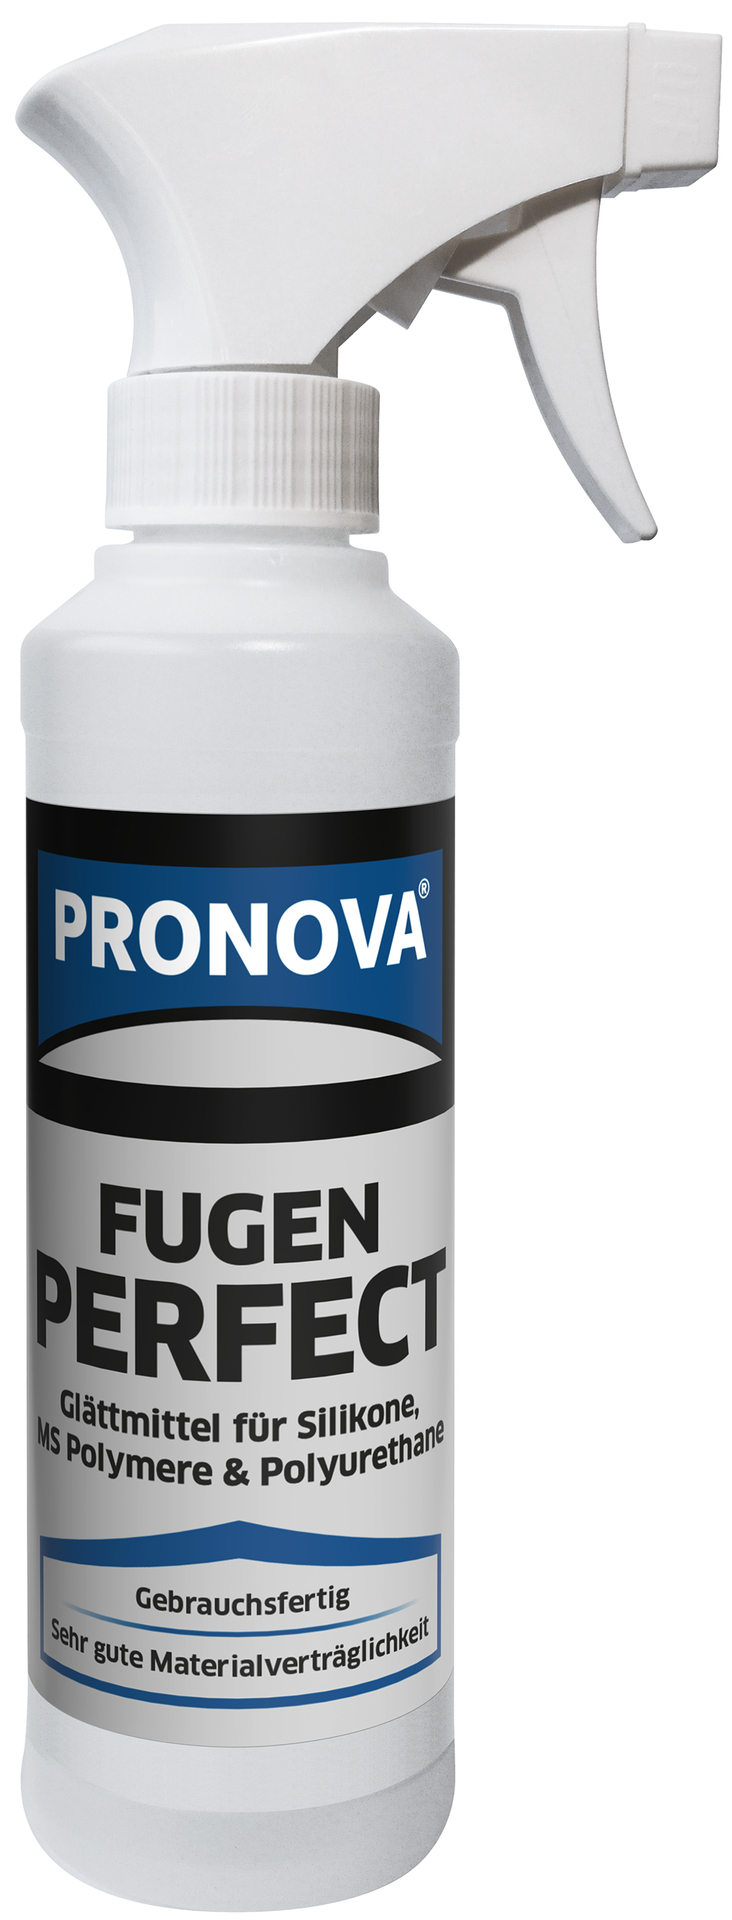 Pronova Fugen Perfect